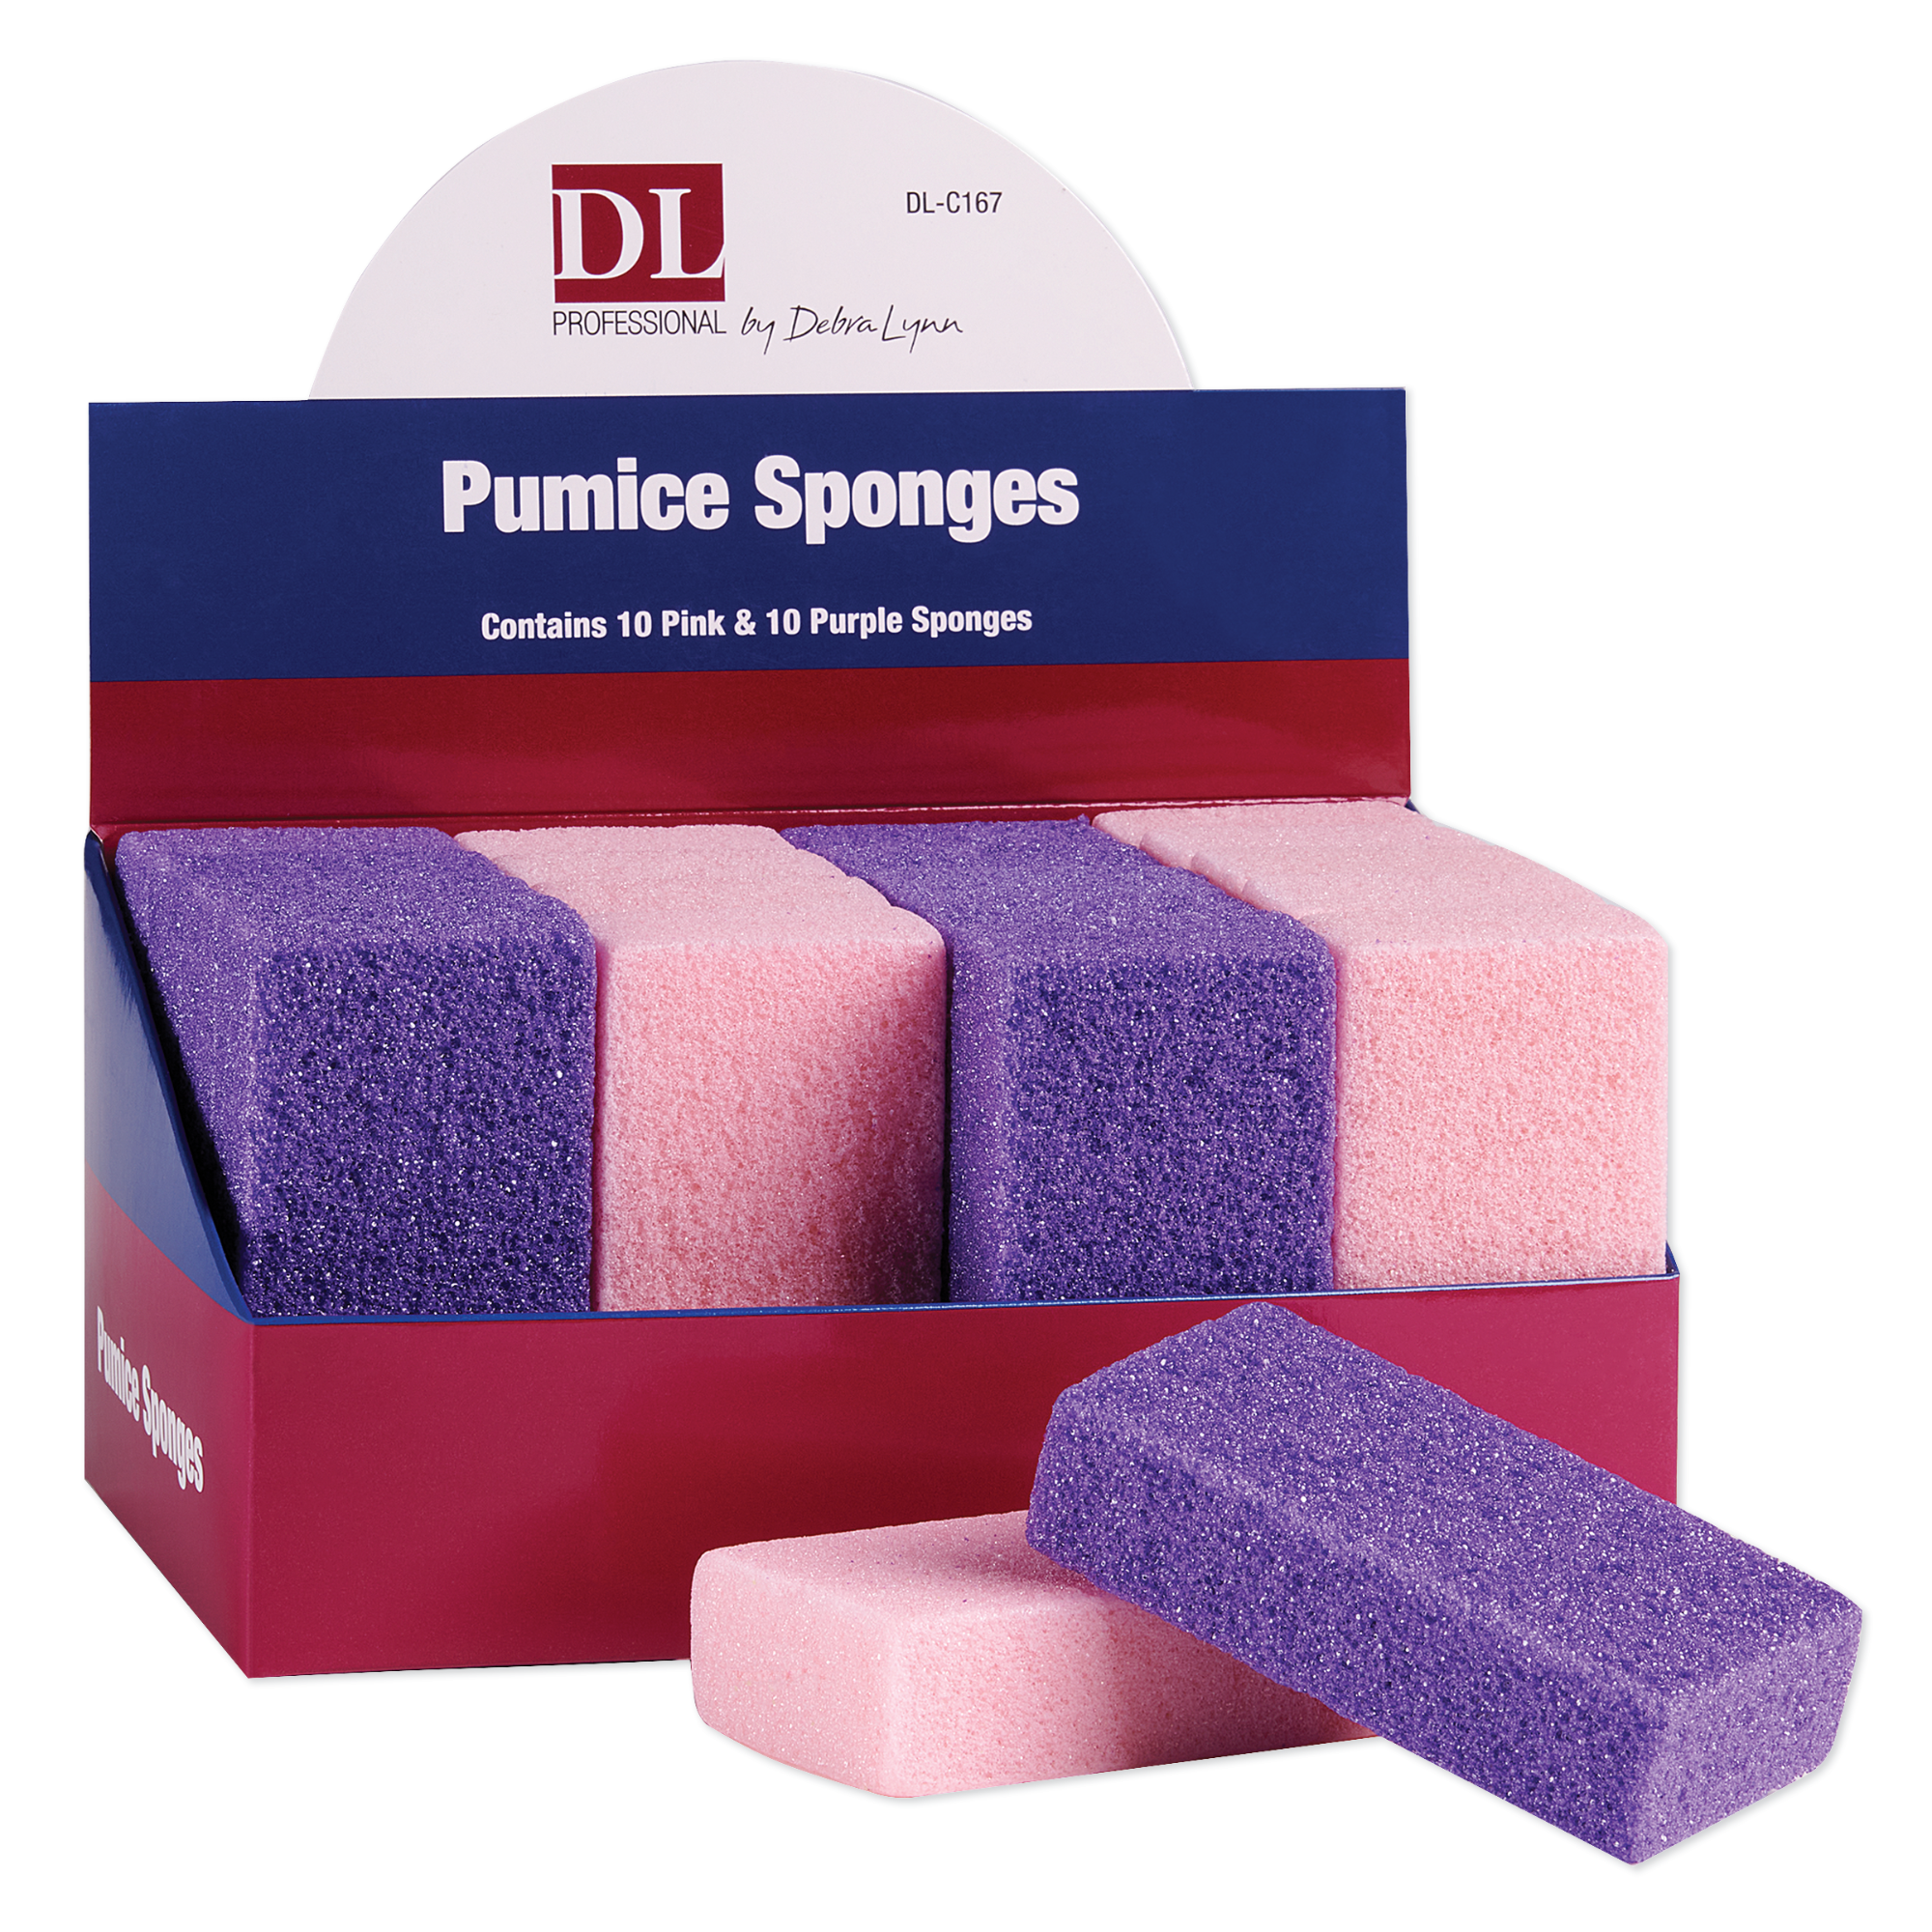 Pumice Sponges - Display of 20